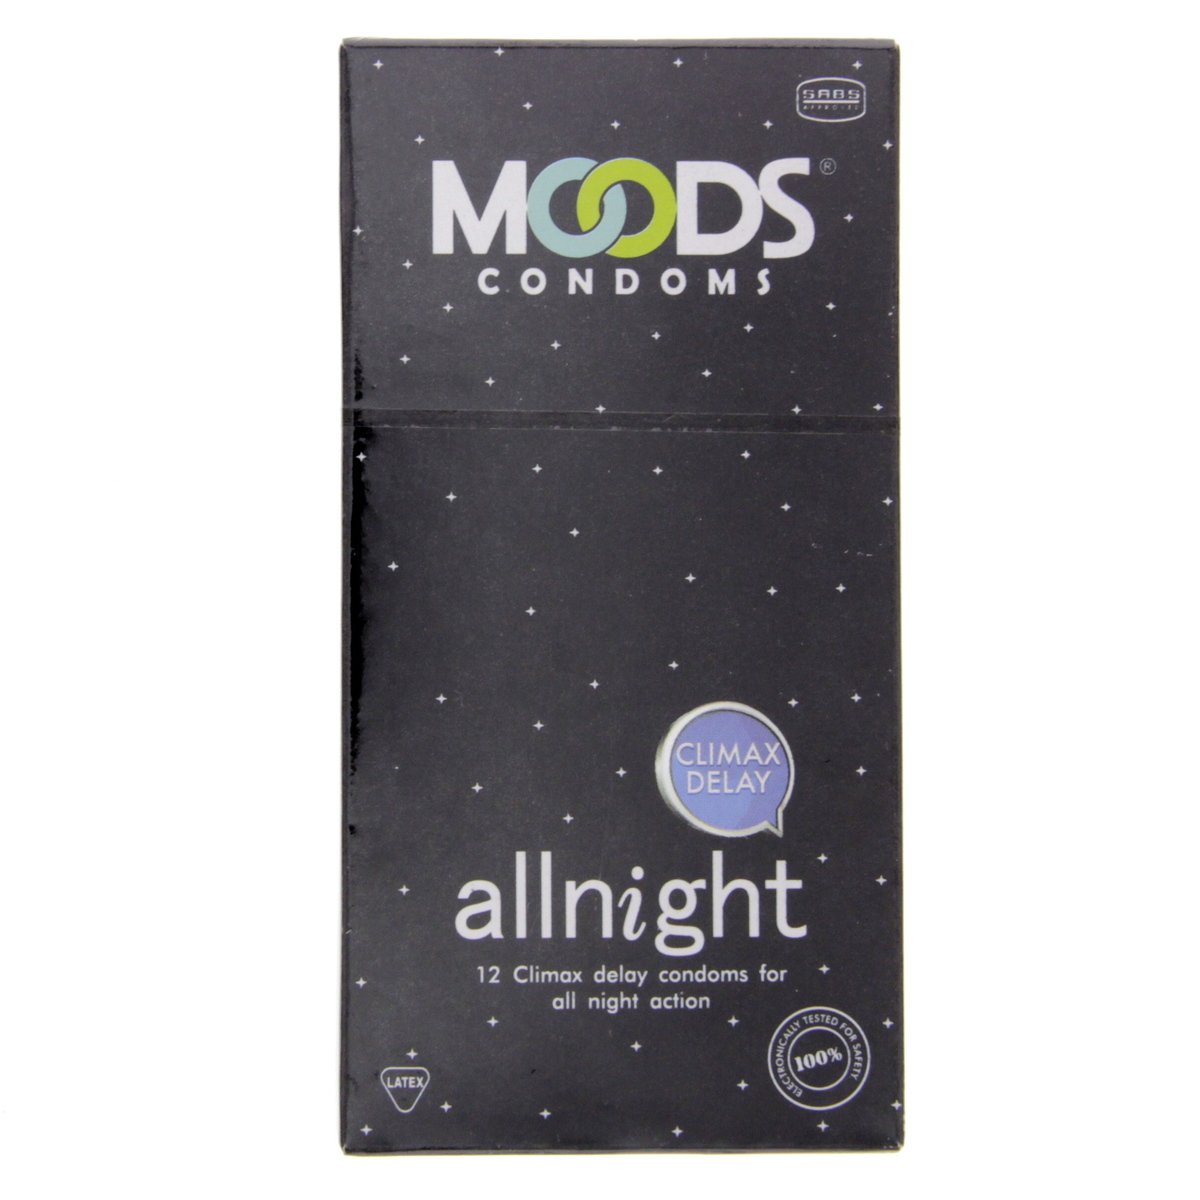 Moods All-night Climax Delay condoms 12 pcs